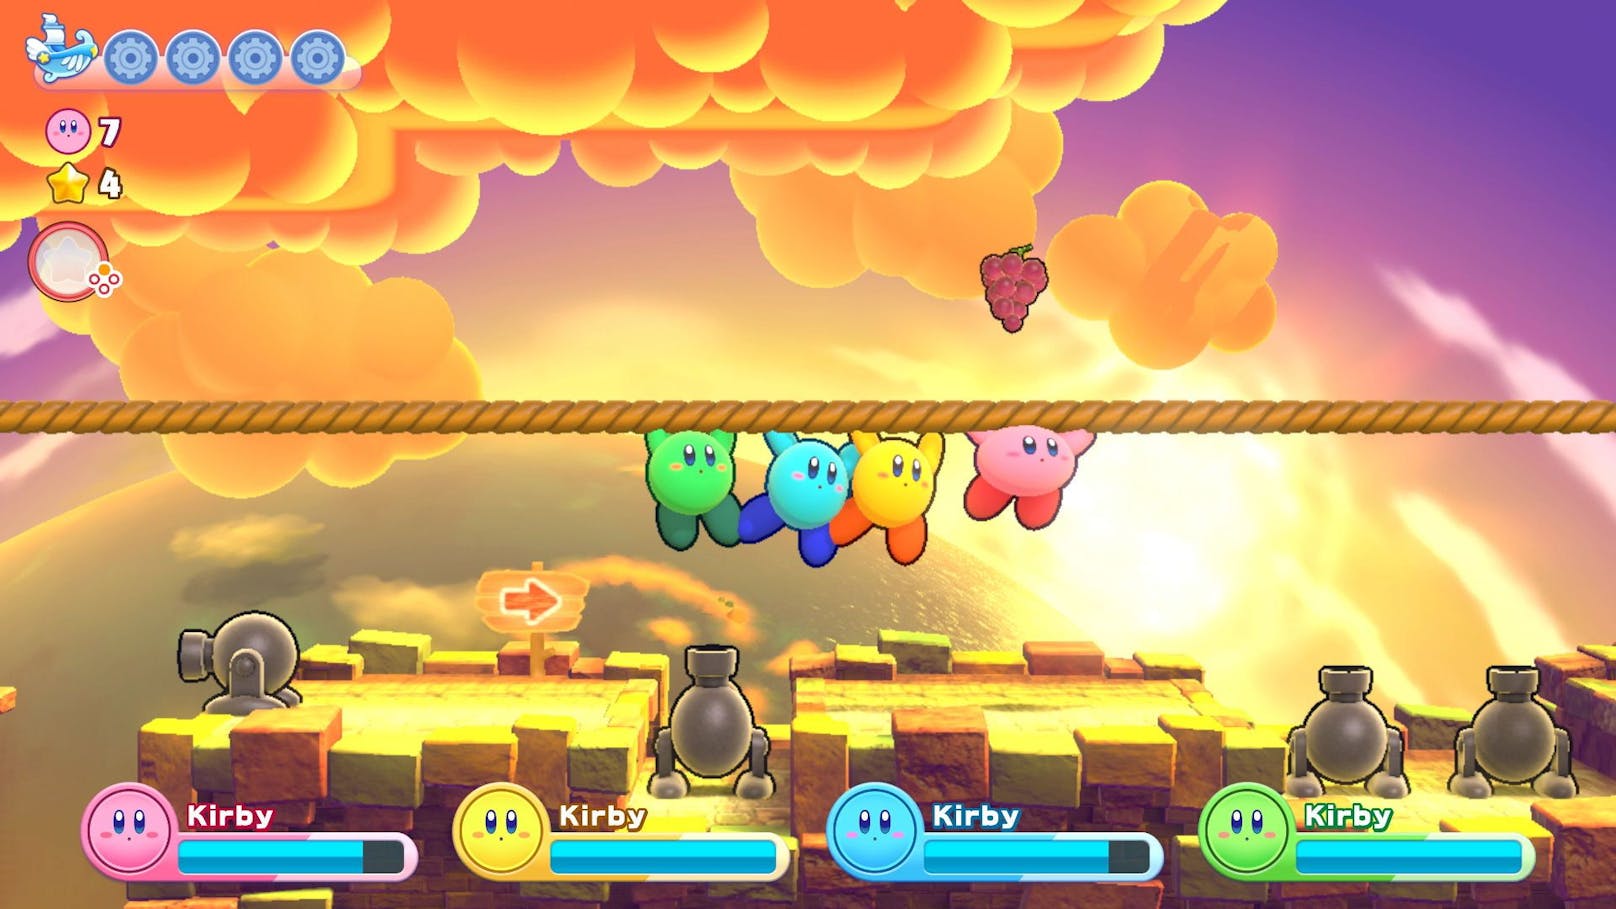 Das Spiel ist ein Remake von "Kirby's Return to Dreamland" aus 2011.